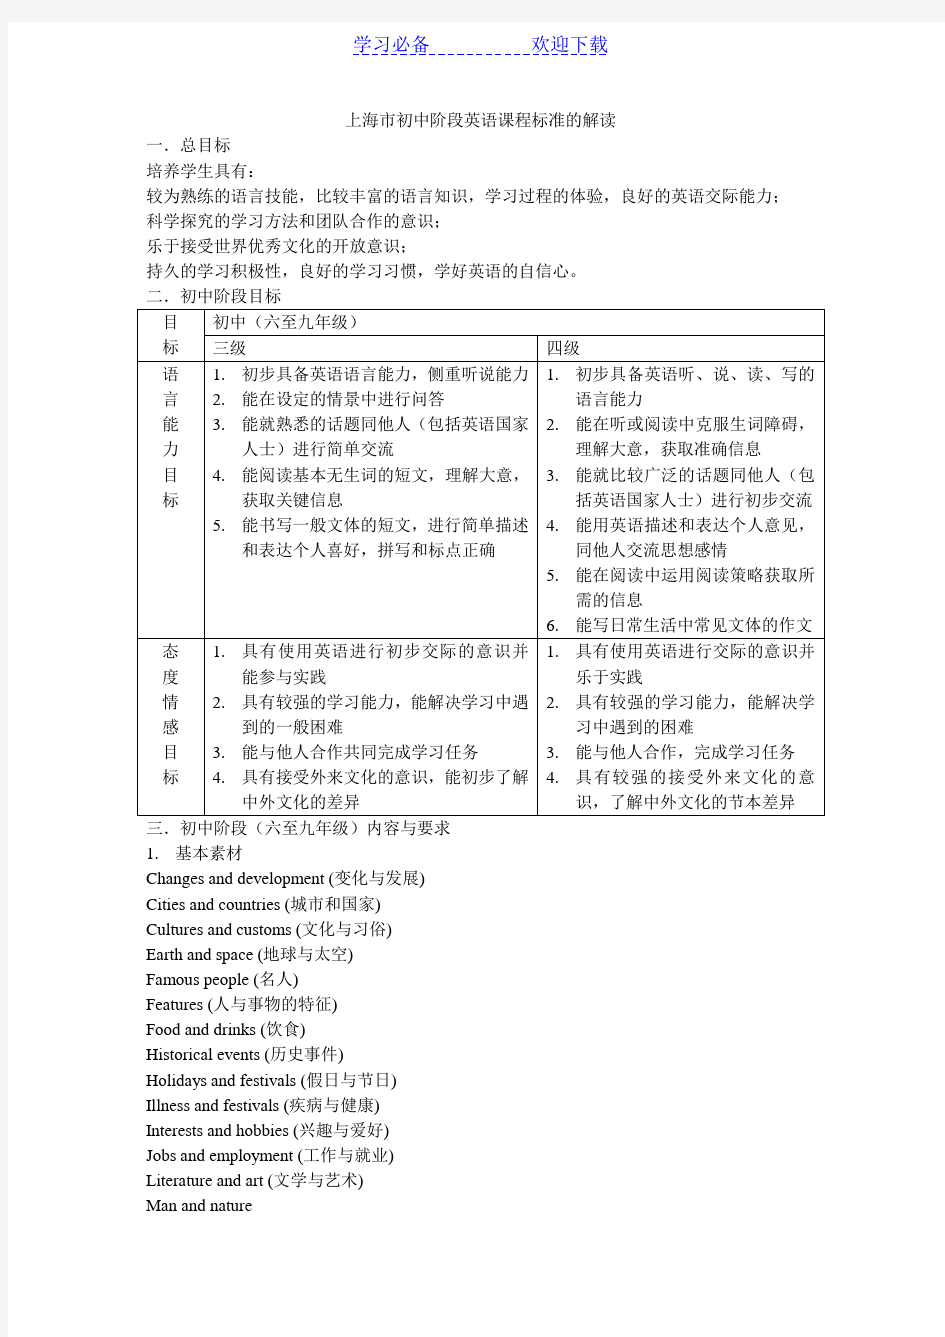 上海市初中阶段英语课程标准的解读